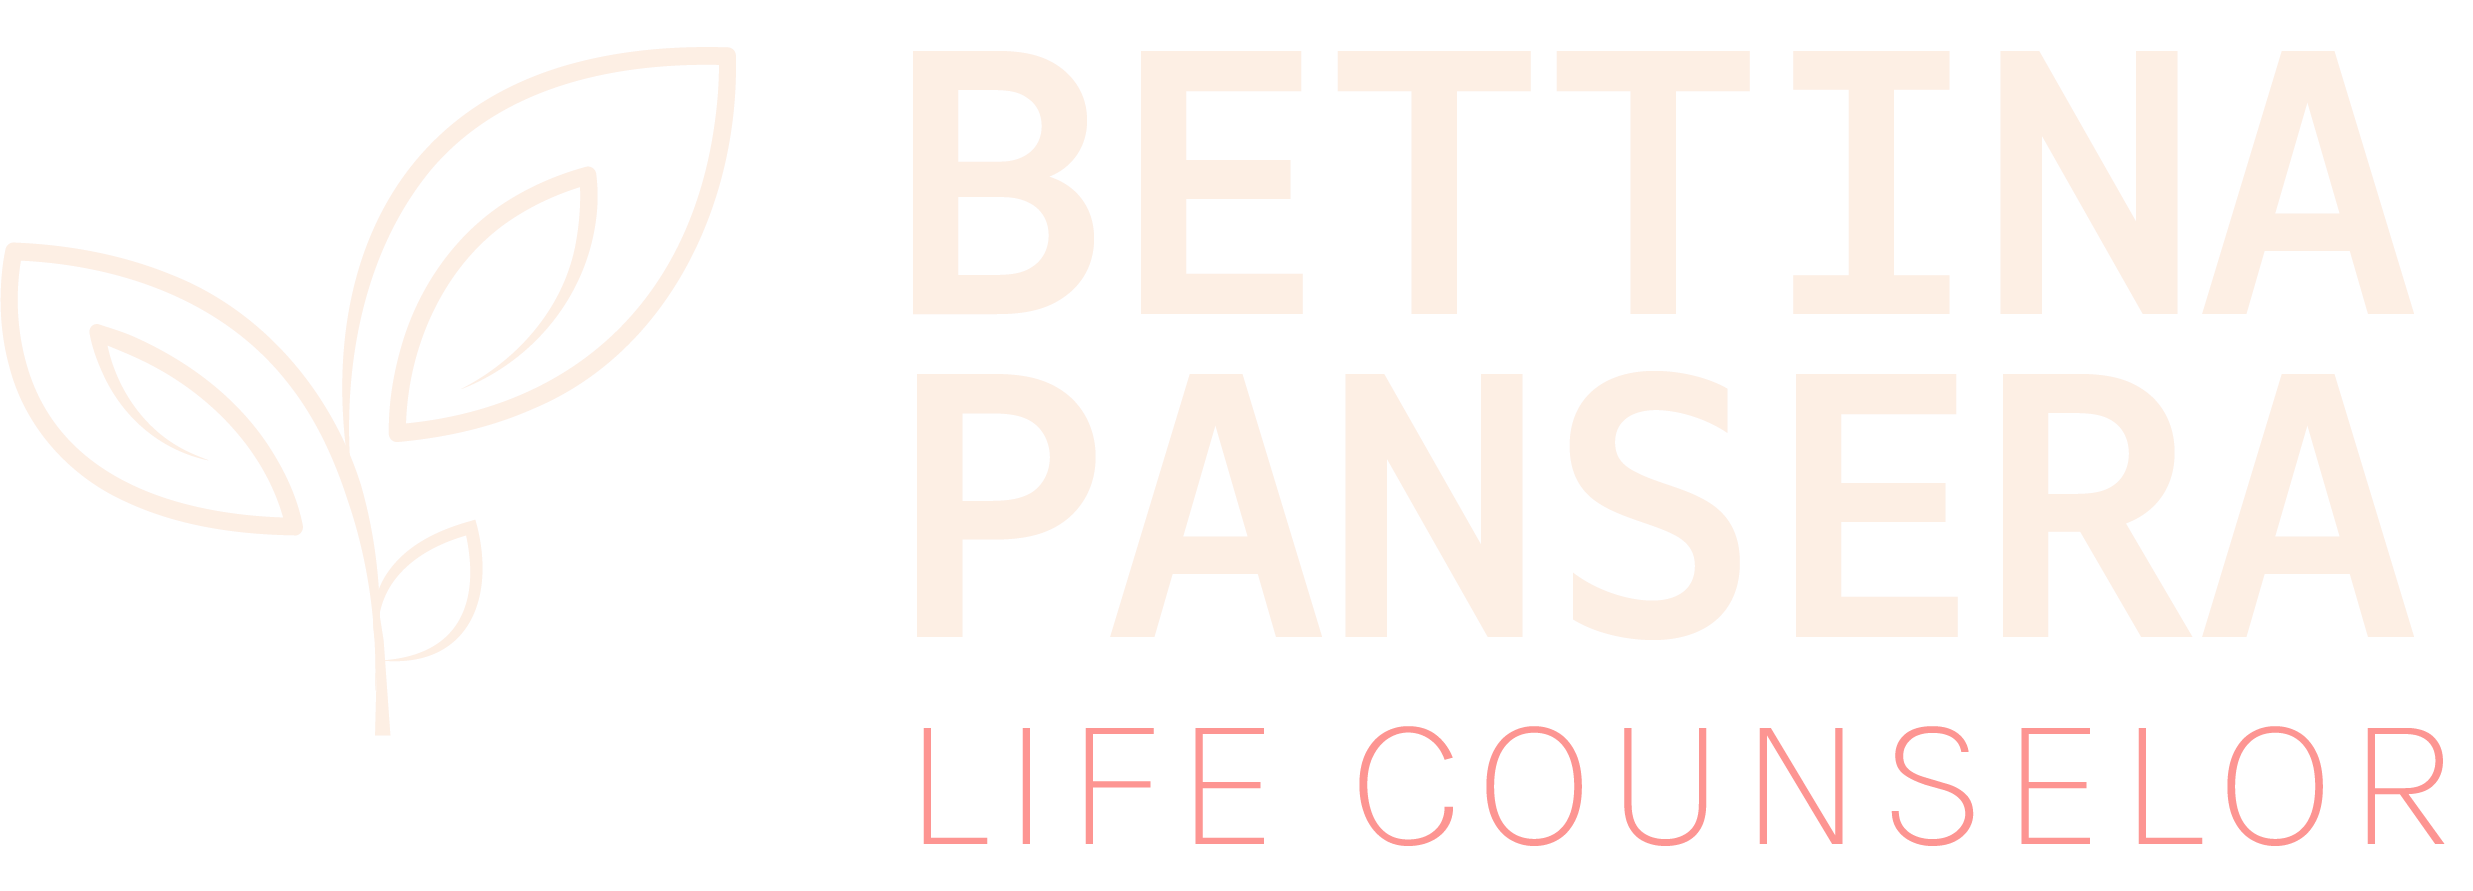 Bettina Pansera - Life Counselor